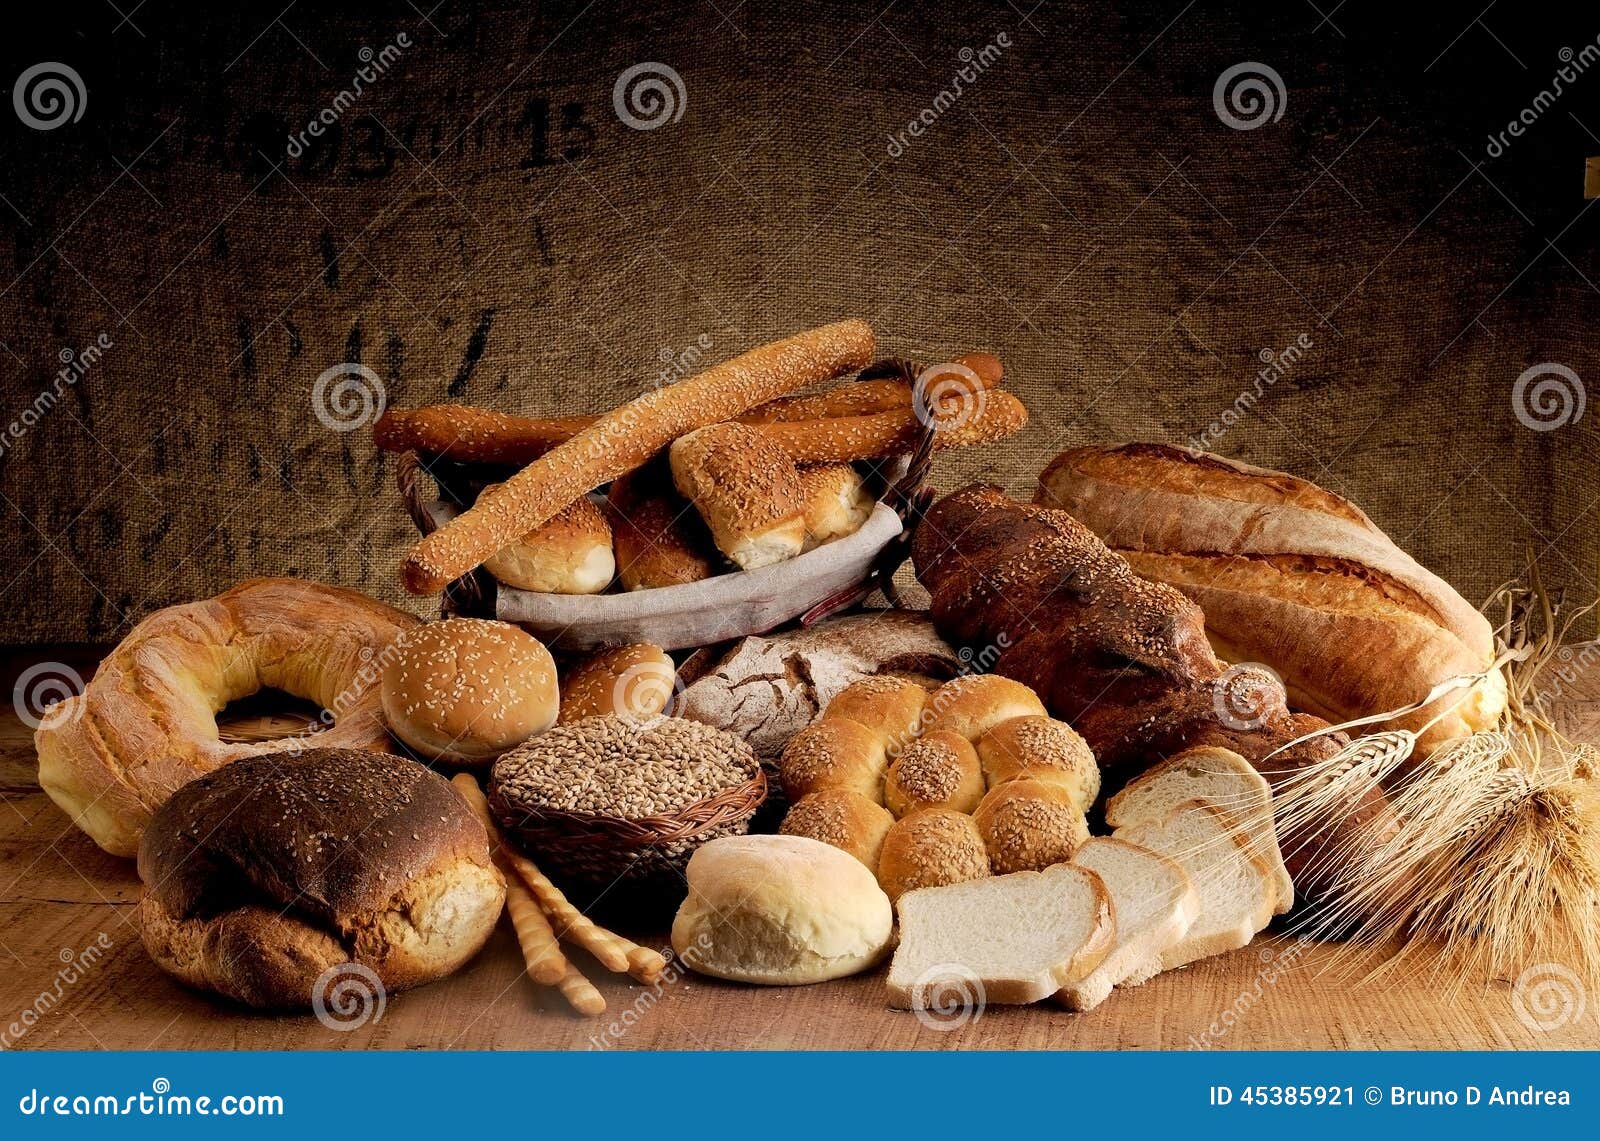 Хлеб и т д. Выпечка хлеба. Печь для хлебобулочных изделий. Реклама хлеба и хлебобулочных изделий. Свежевыпеченный хлеб.